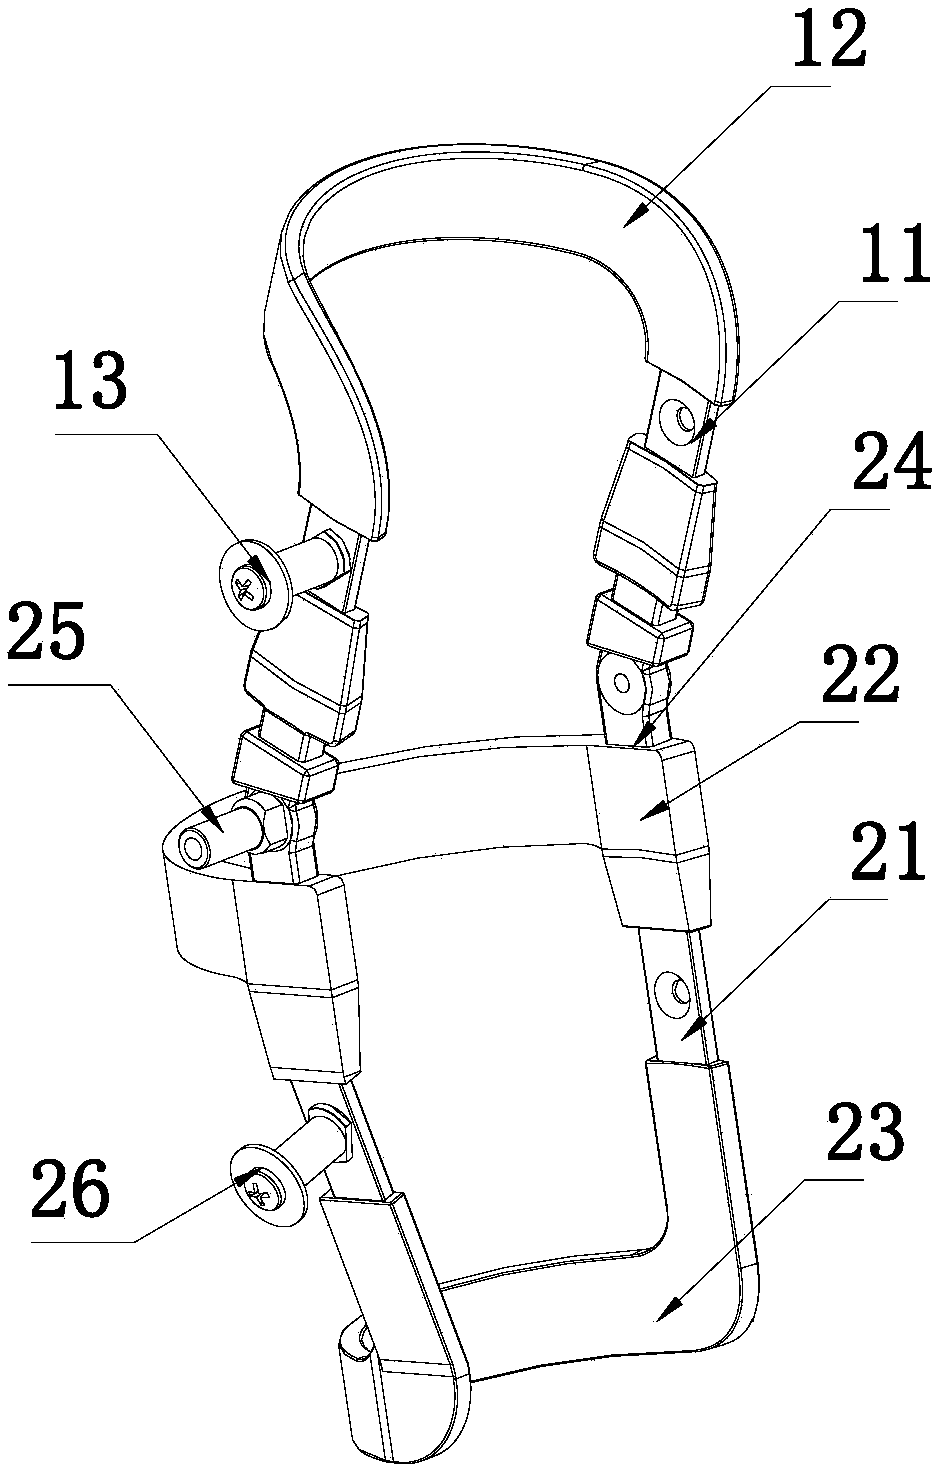 Torque device for bandy leg correction